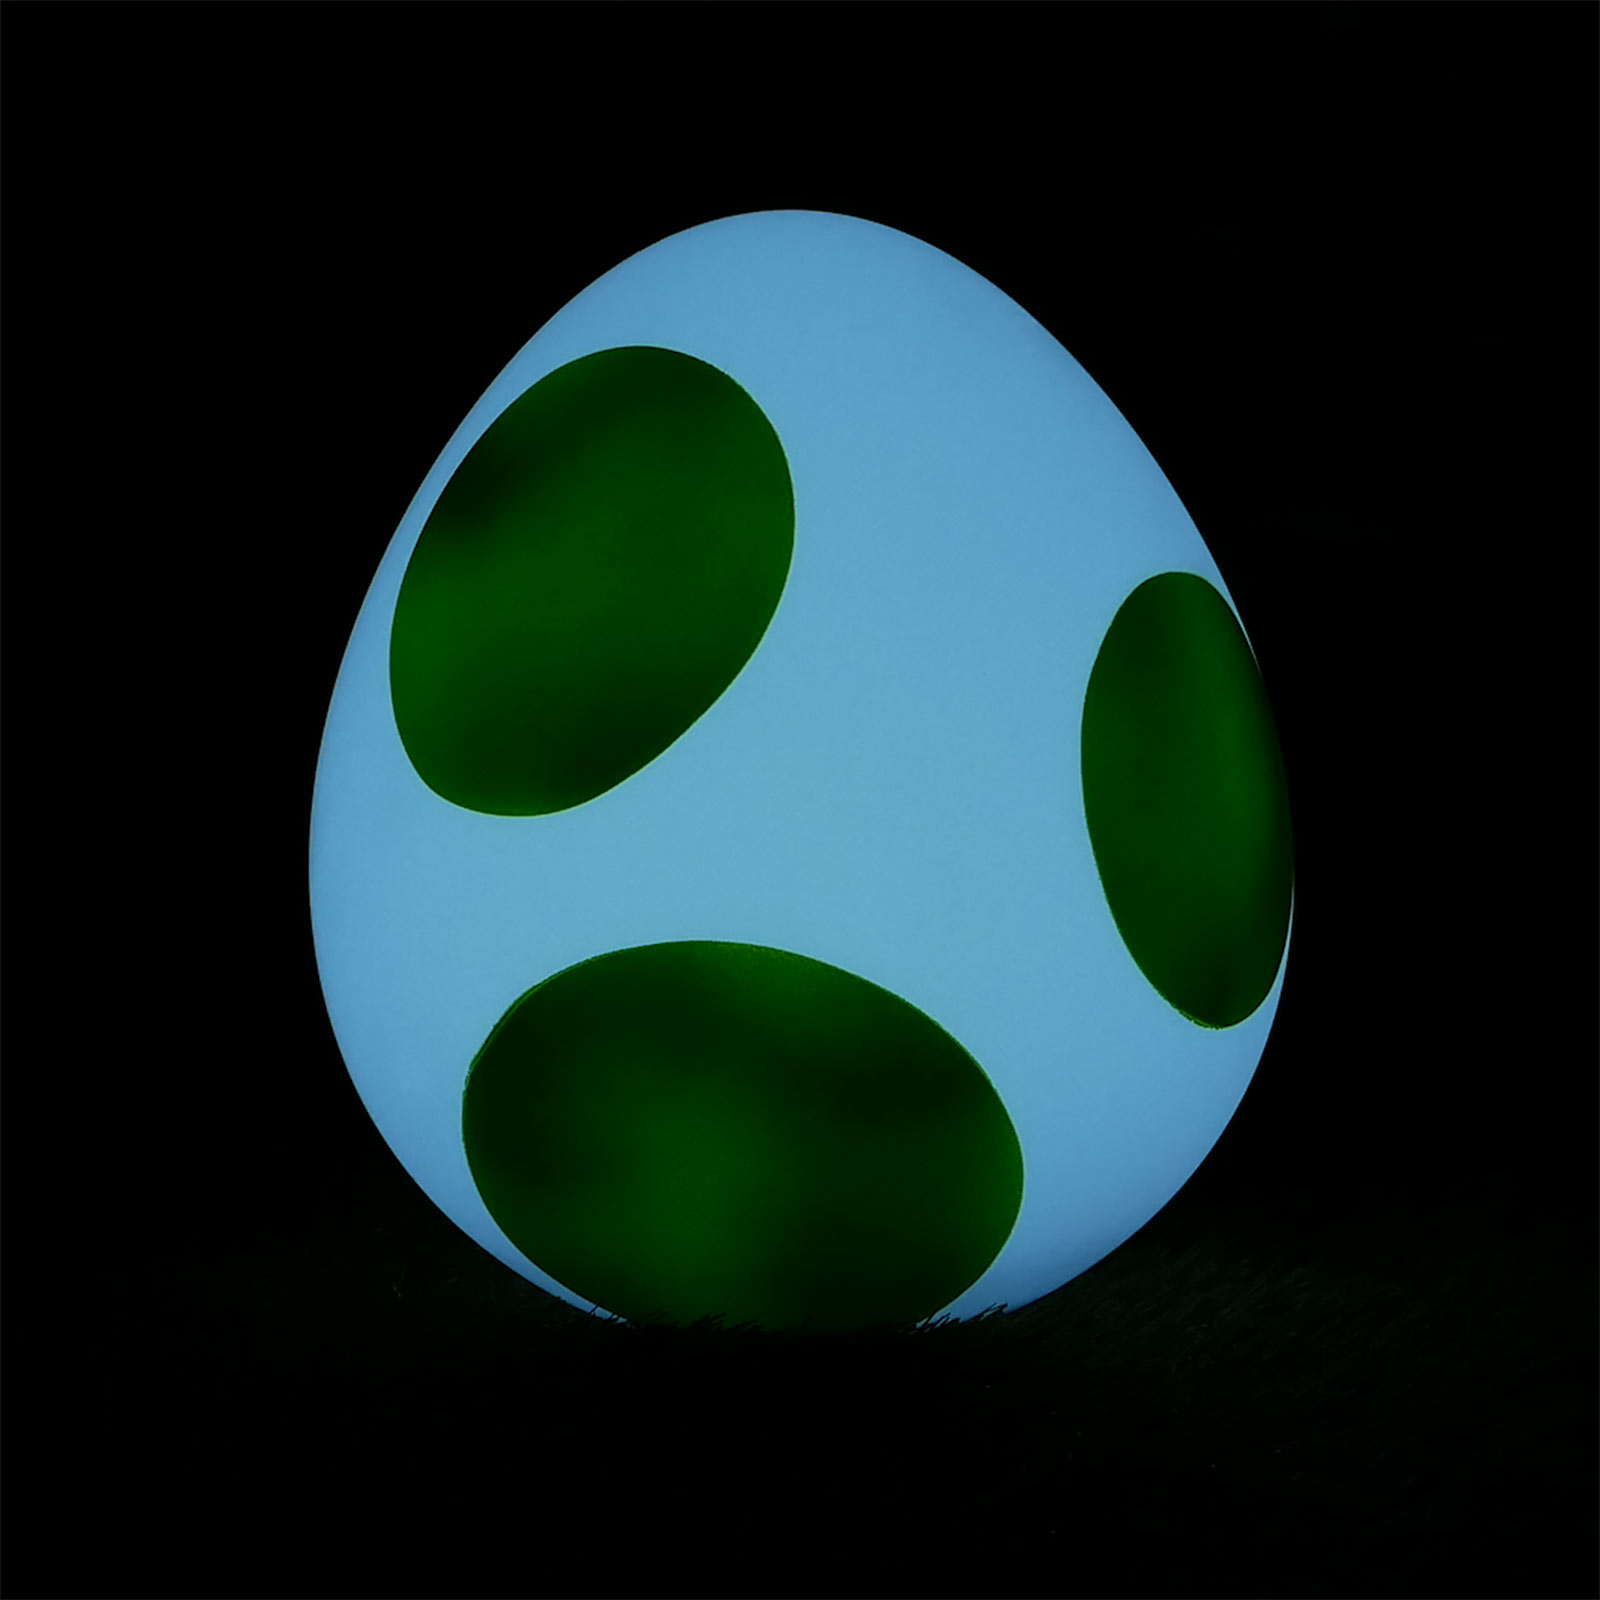 Super Mario - Yoshi Egg Table Lamp